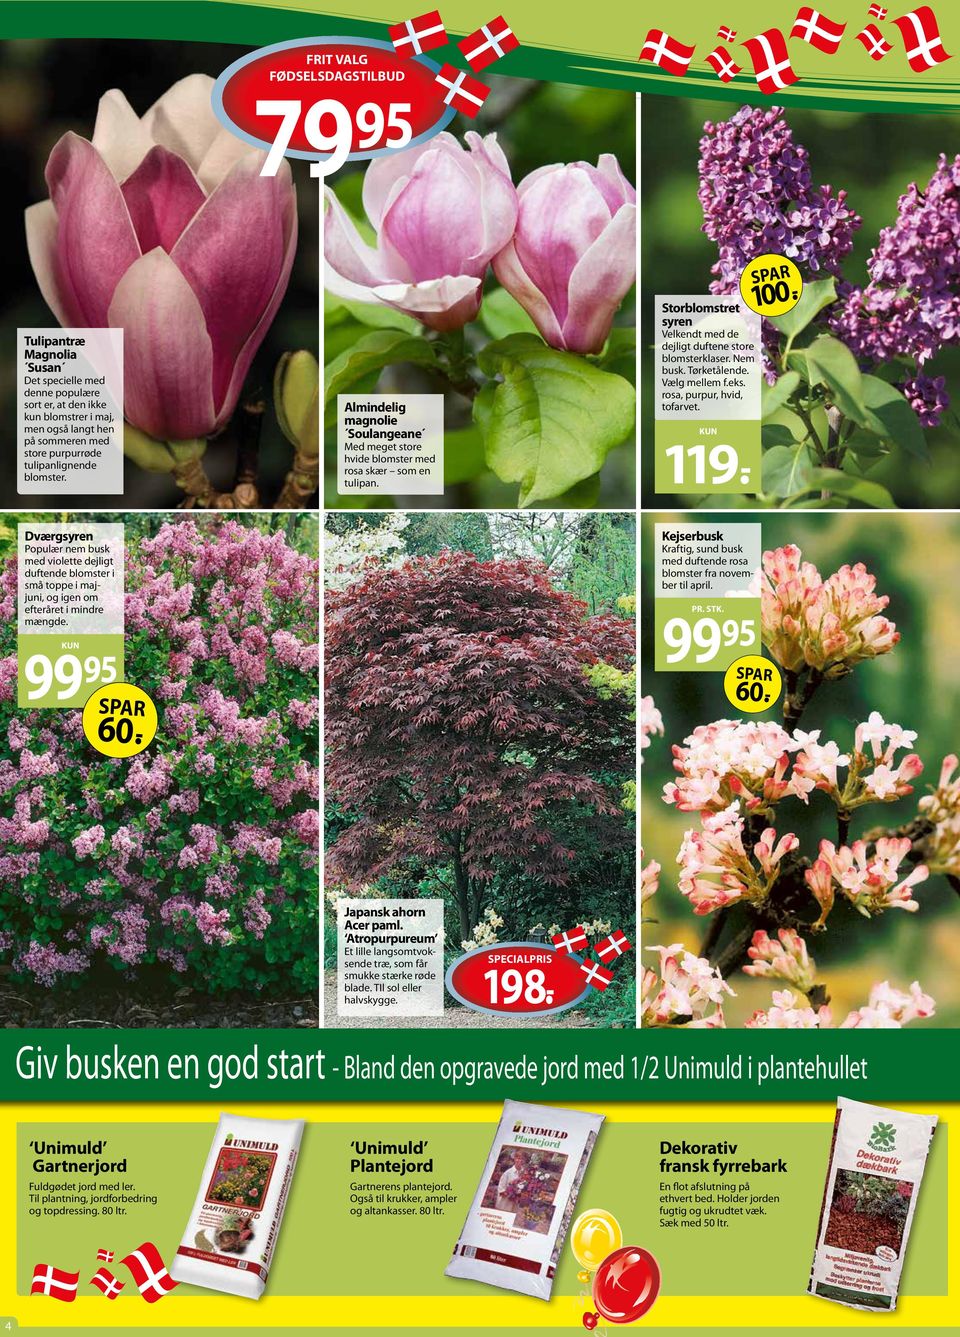 Vælg mellem f.eks. rosa, purpur, hvid, tofarvet. 9.- 00.- Dværgsyren Populær nem busk med violette dejligt duftende blomster i små toppe i majjuni, og igen om efteråret i mindre mængde. 99 95 99 60.